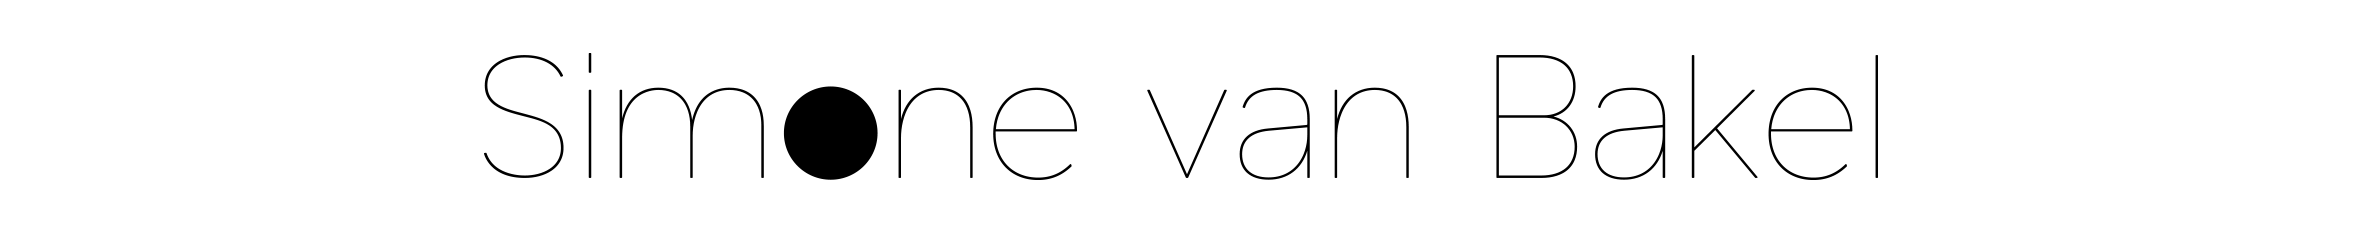 logo_svb_8